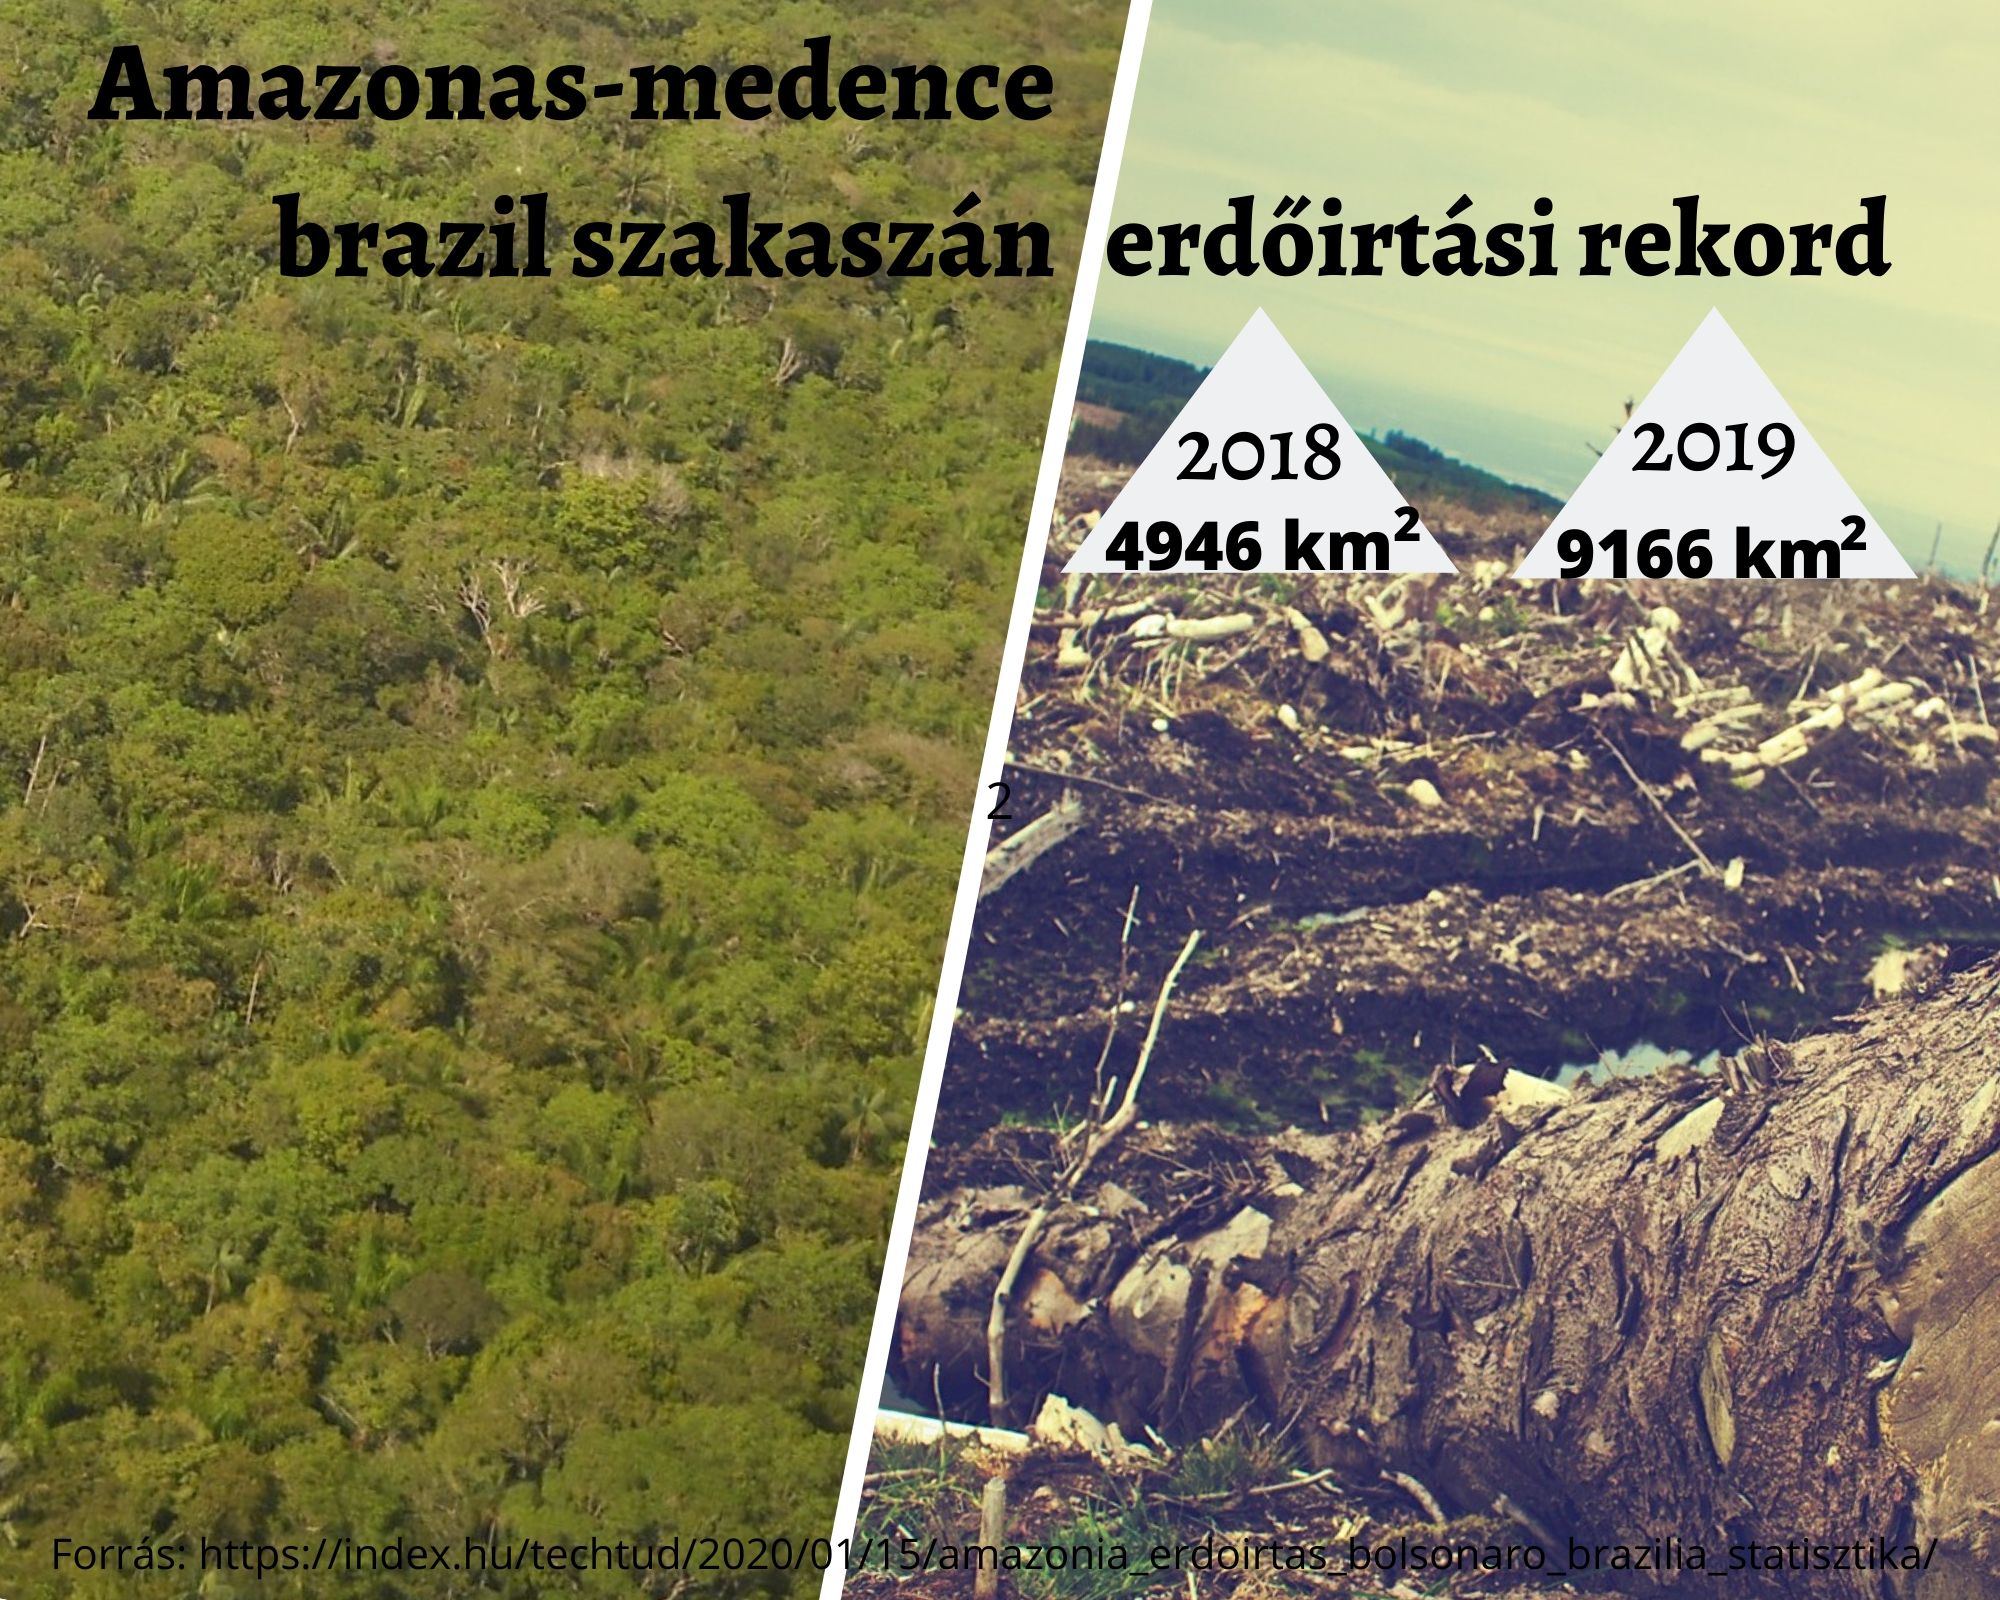 Erdőirtási rekord az Amazonas-medence brazil szakaszán